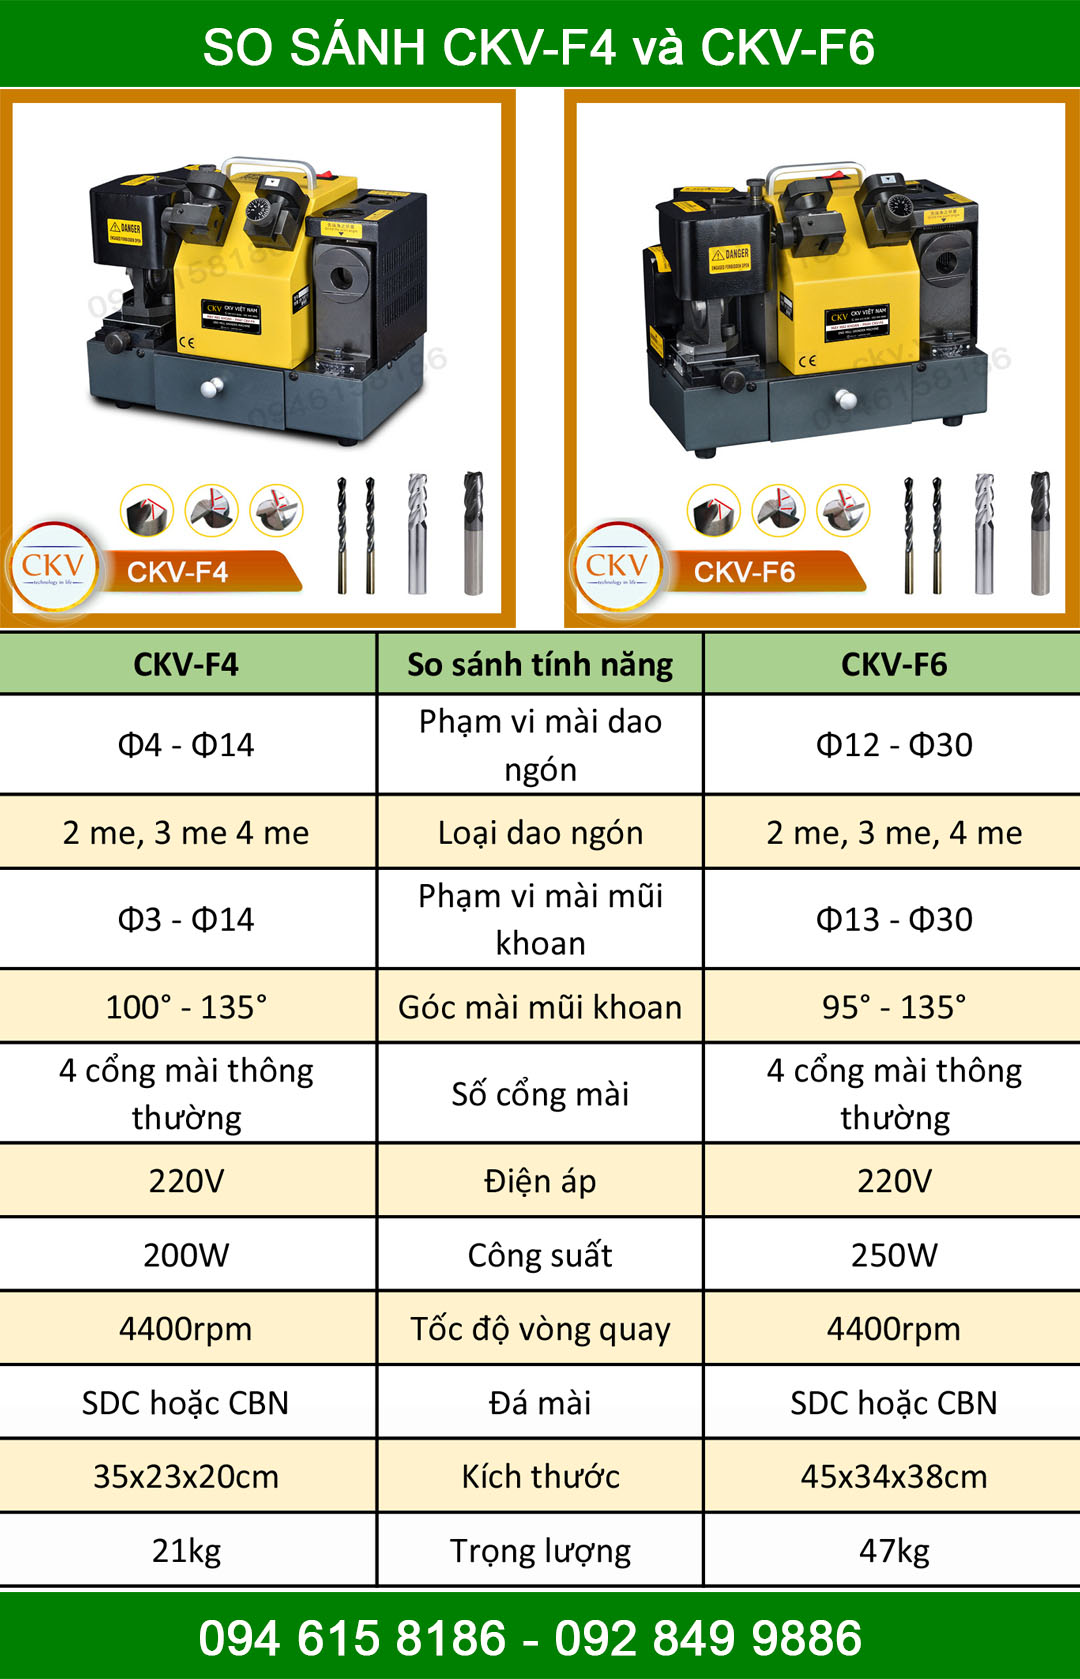 So sánh CKV-F4 và CKV-F6